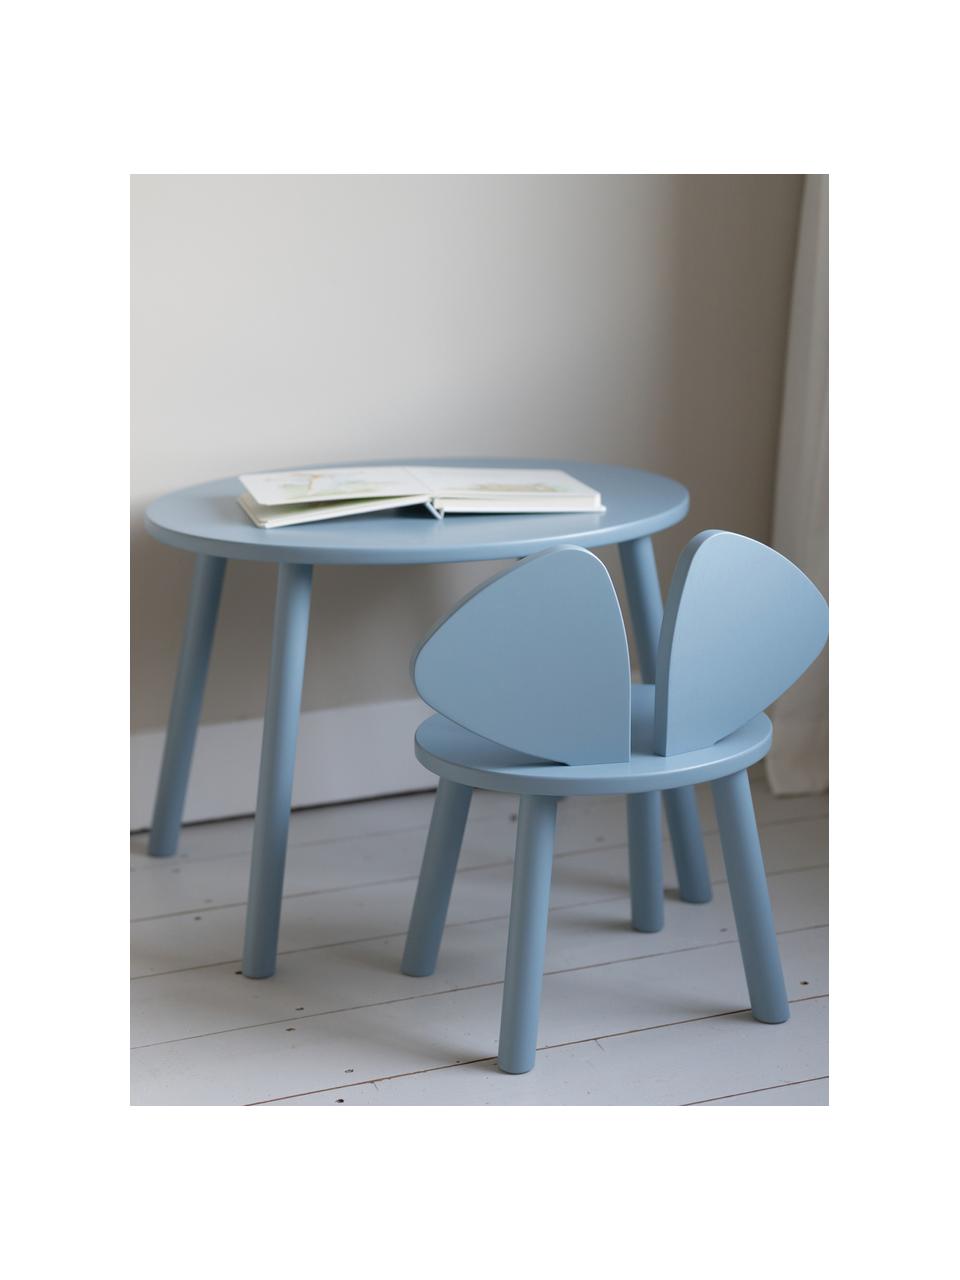 Kindertisch Mouse mit Kinderstuhl, 2er-Set, Birkenholzfurnier, lackiert

Dieses Produkt wird aus nachhaltig gewonnenem, FSC®-zertifiziertem Holz gefertigt., Hellblau, Set mit verschiedenen Größen